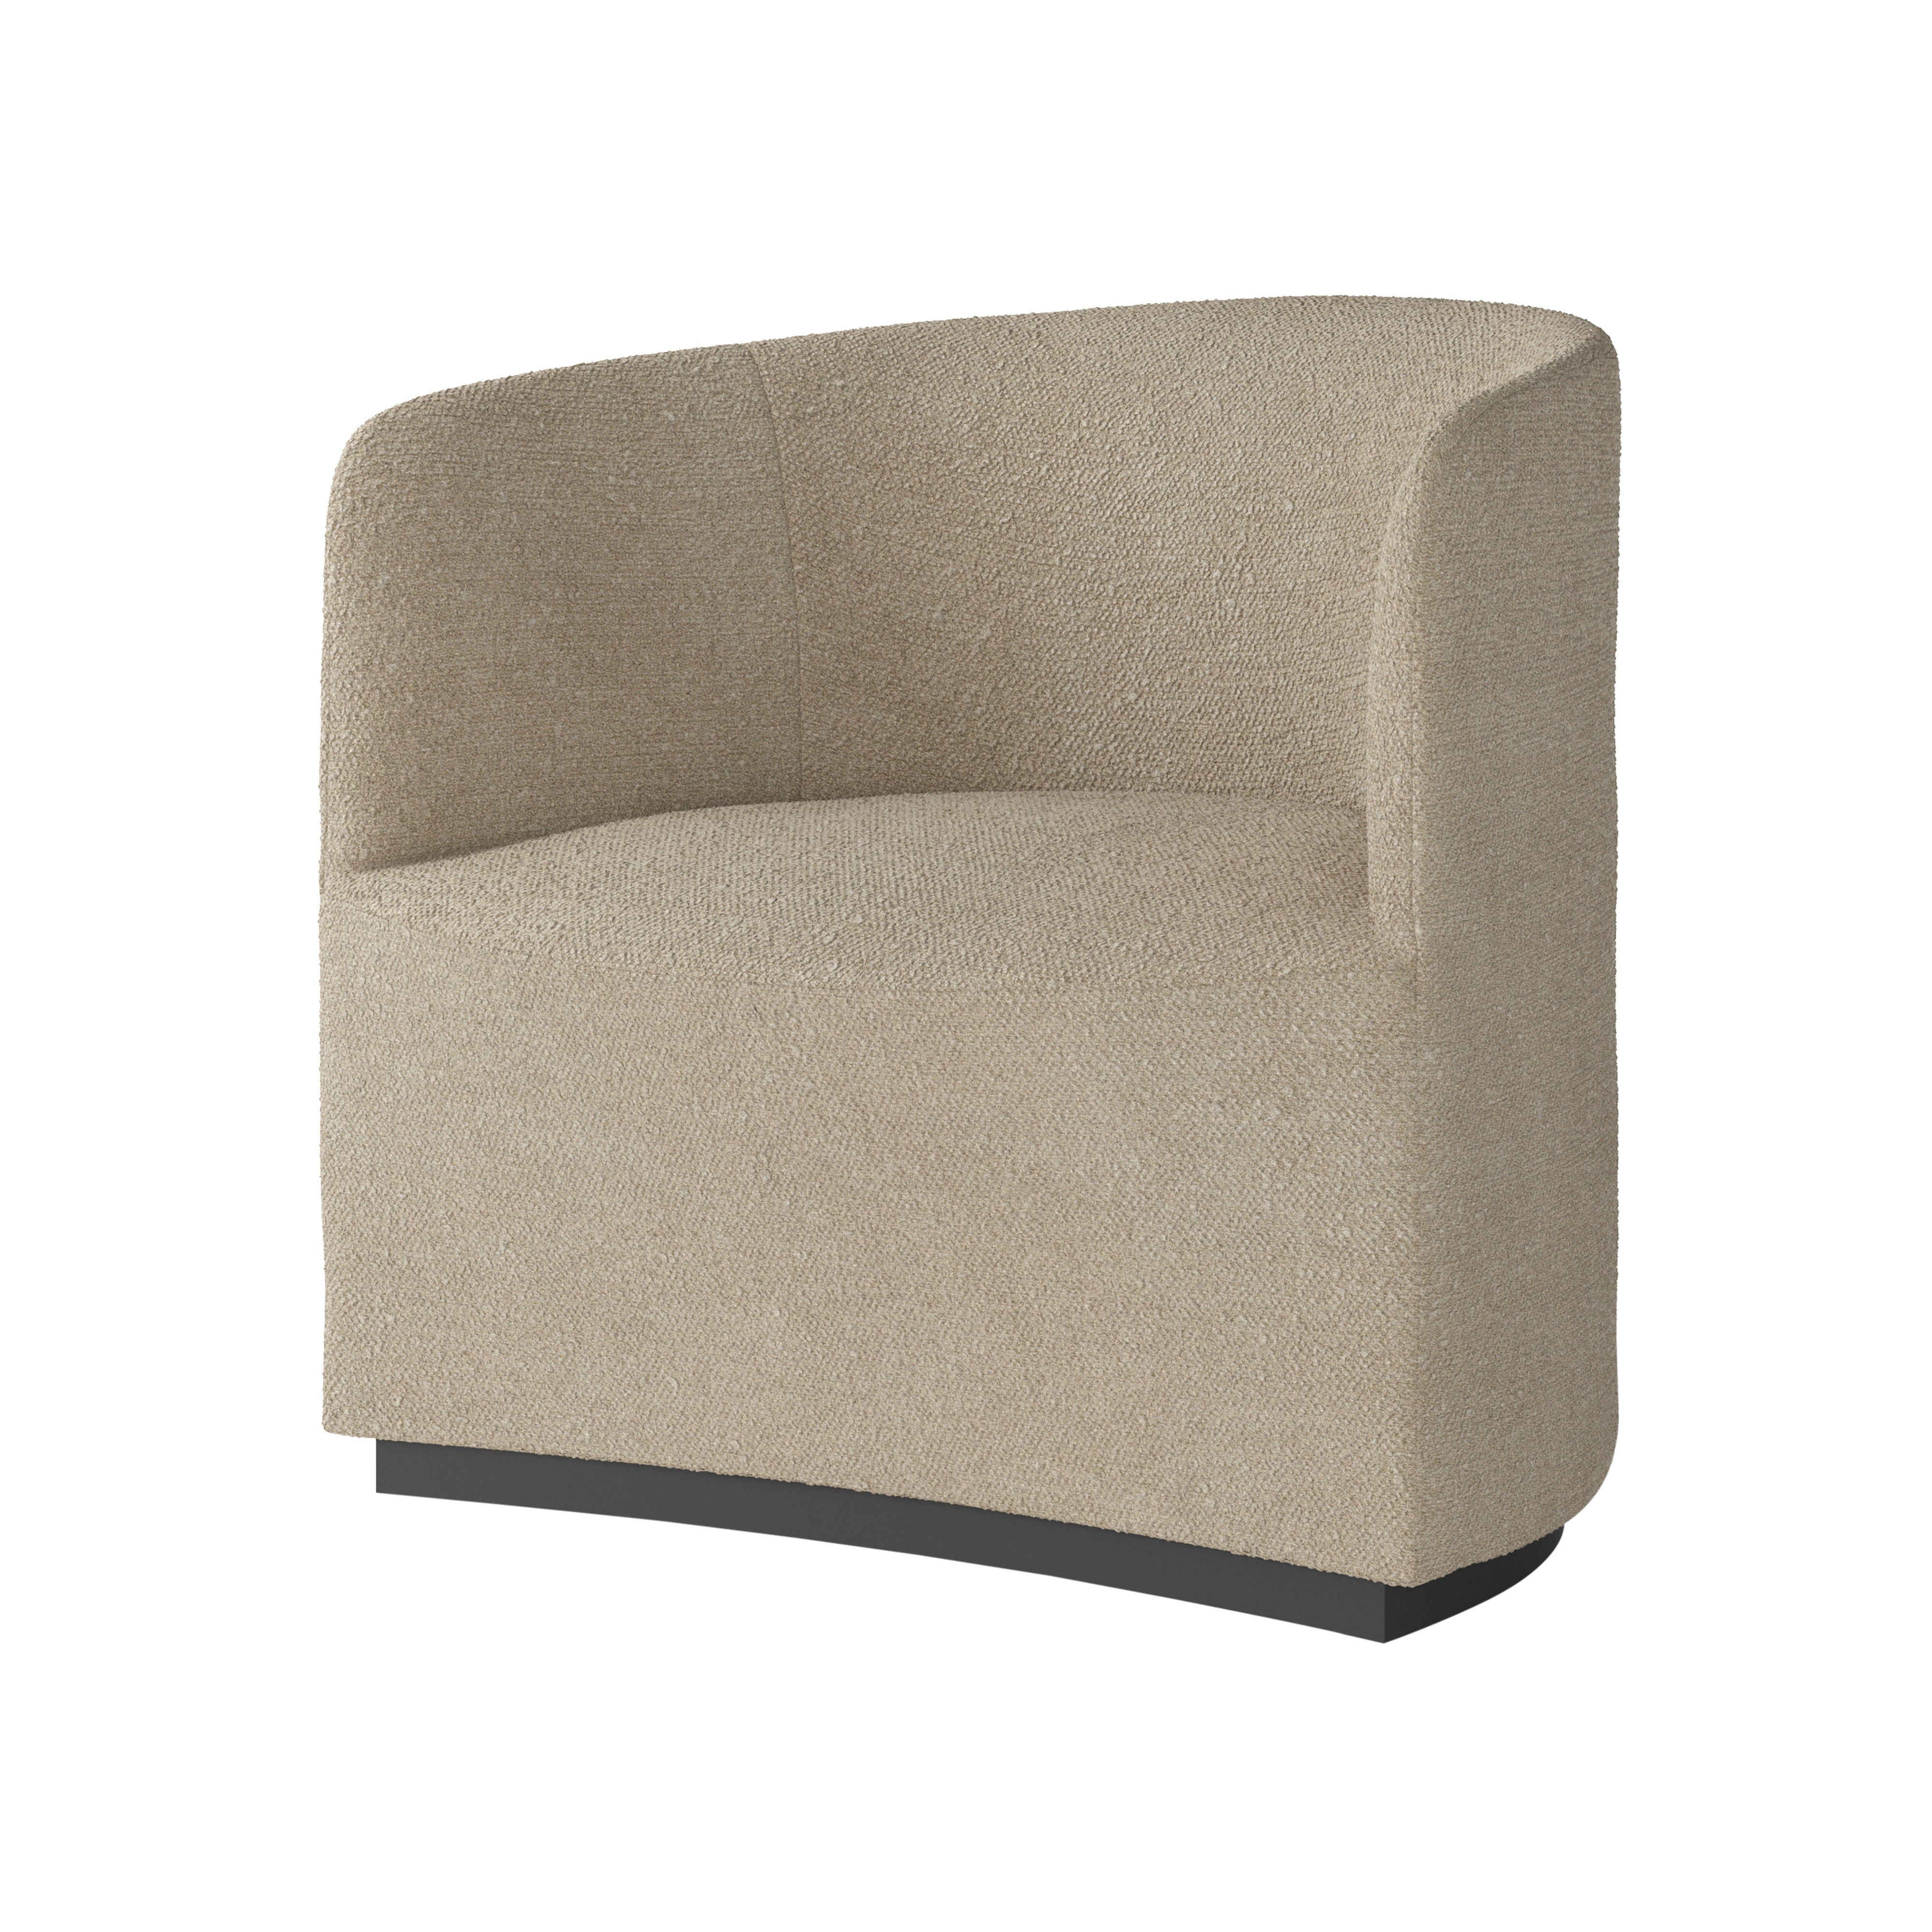 Tearoom Lounge Chair: Boucle 02